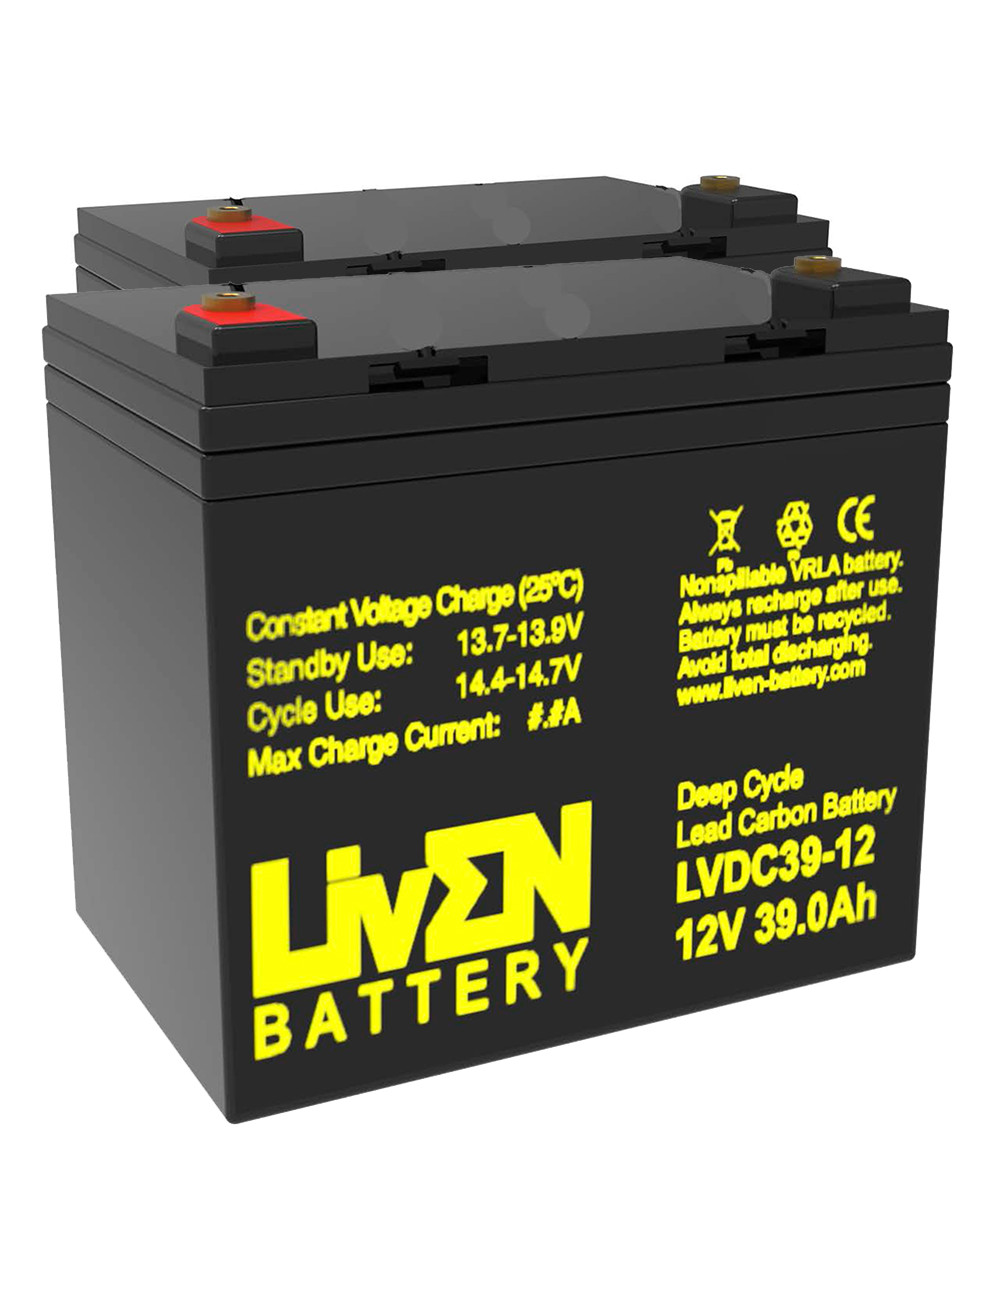 Pacote 2 baterias gel carbono para Celebrity de Pride Mobility de 12V 39Ah C20 ciclo profundo Liven LVDC39-12 - 1